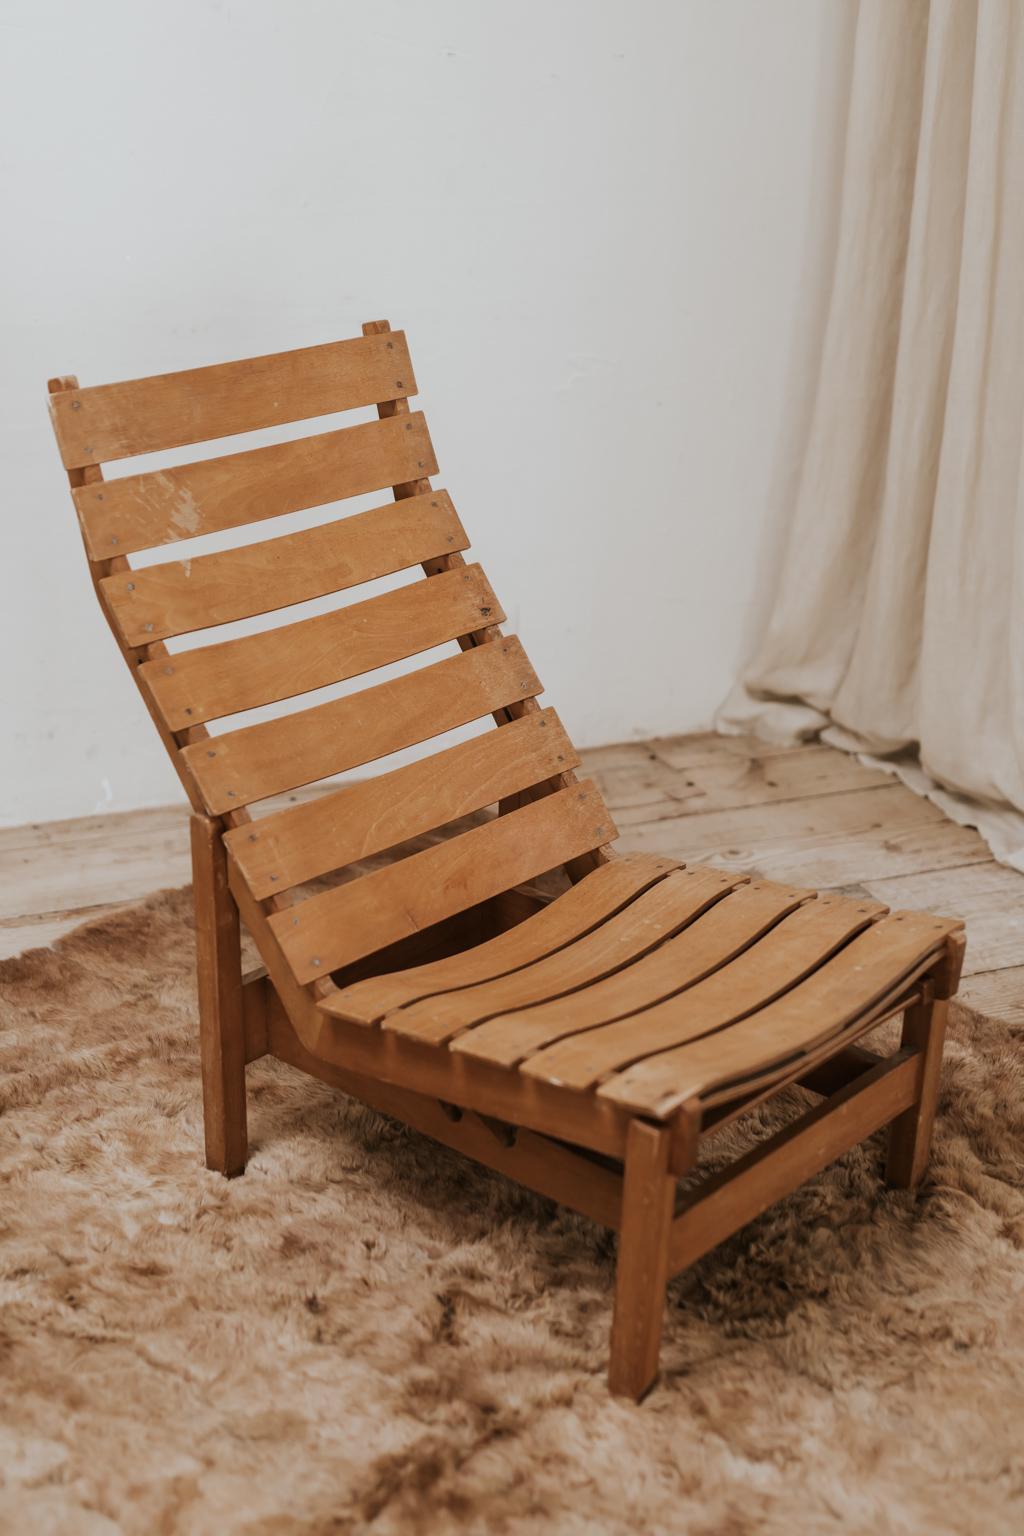 Un merveilleux exemple de chaise longue vintage, de belles lignes.